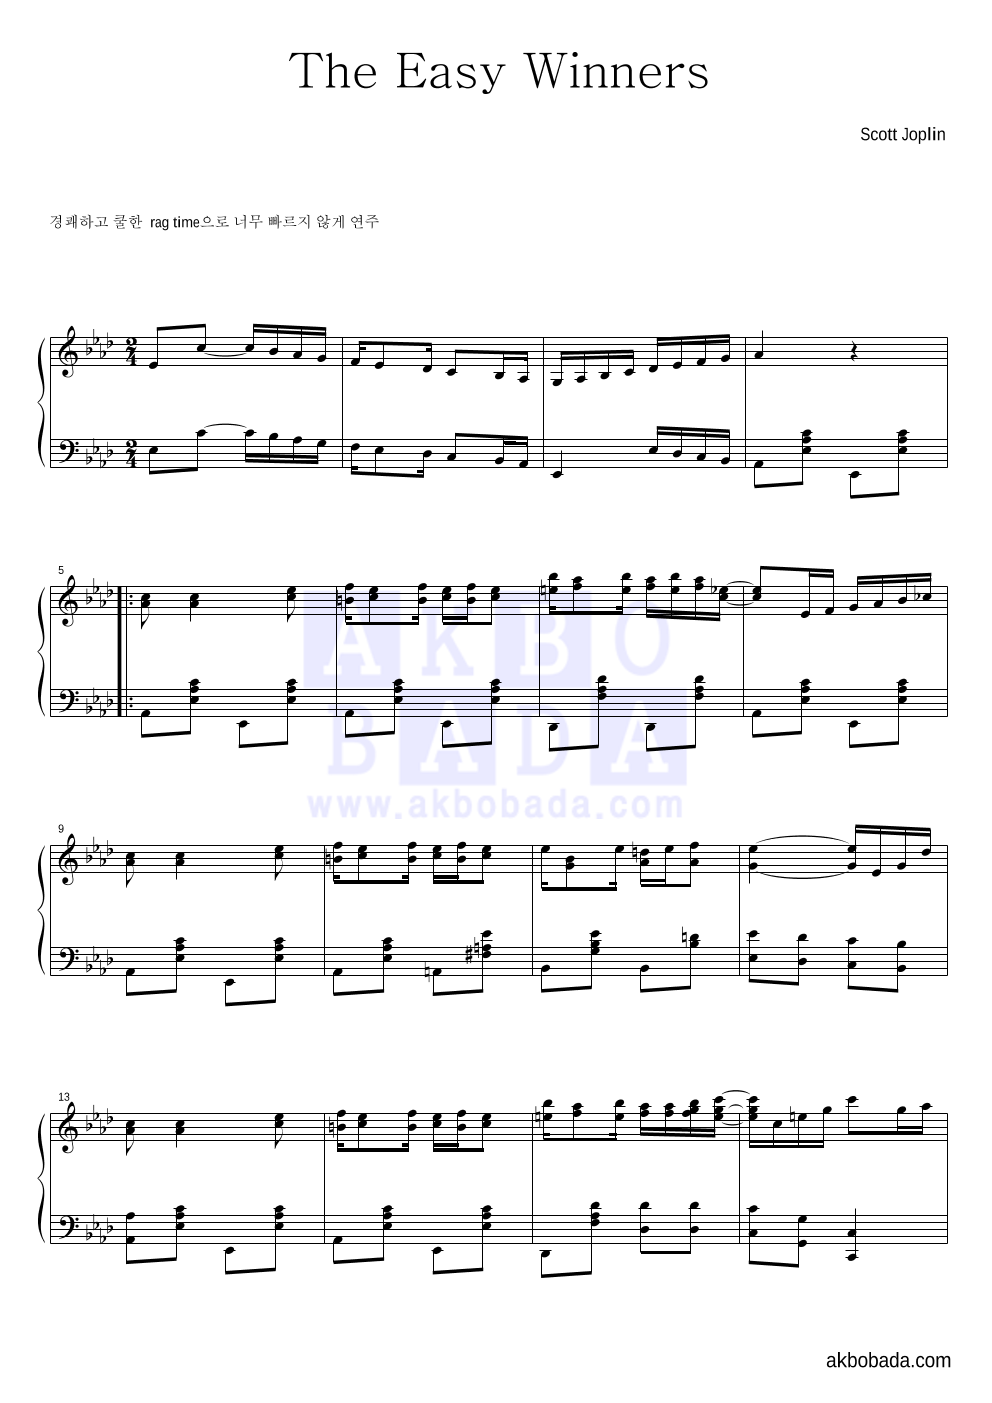 Scott Joplin - The Easy Winners 피아노 2단 악보 